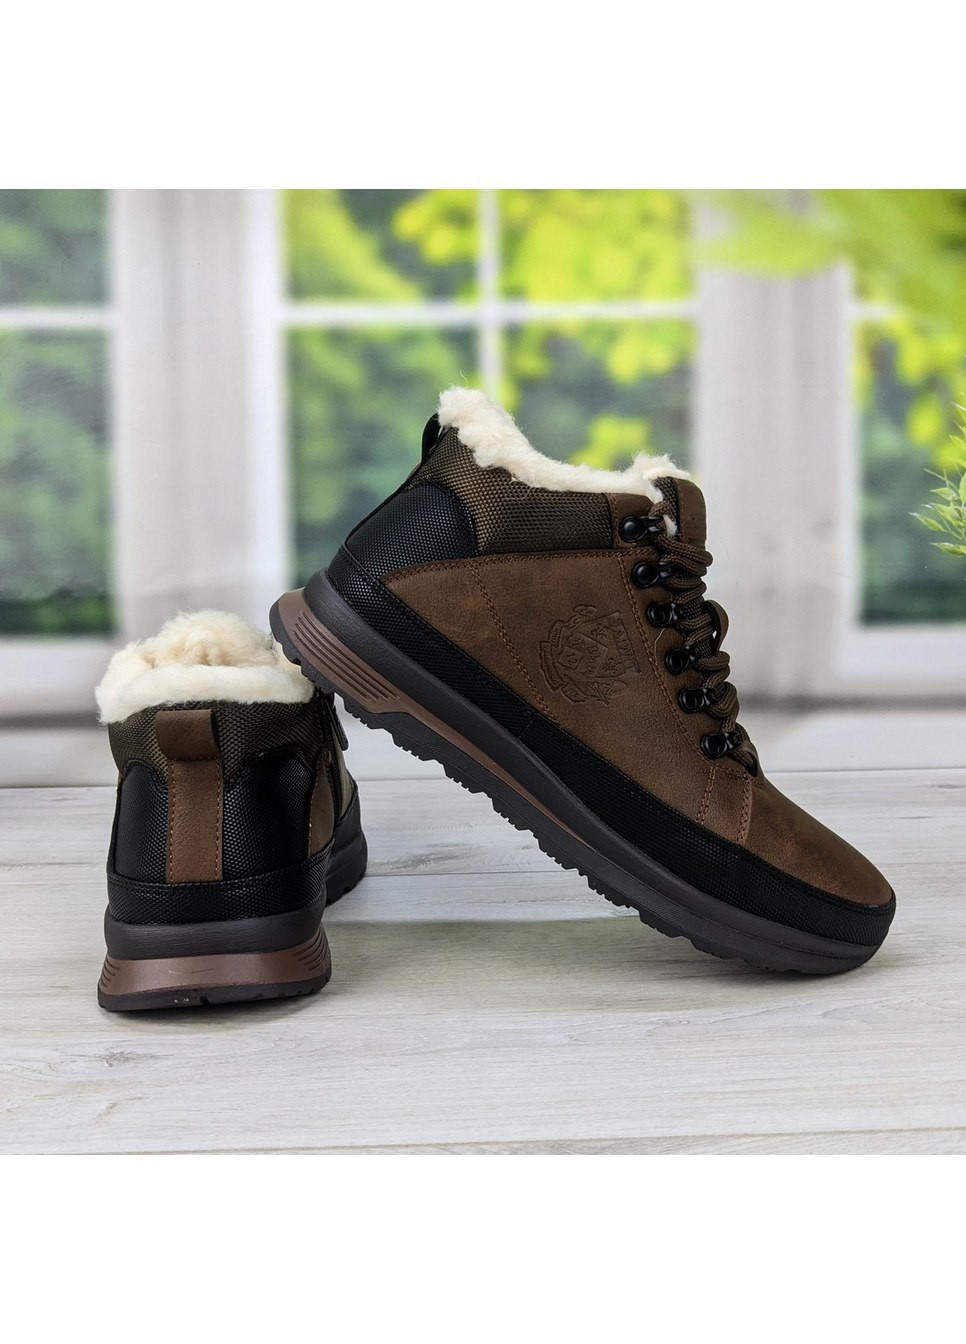 Коричневые зимние ботинки мужские зимние коричневые эко-кожа SAIWIT